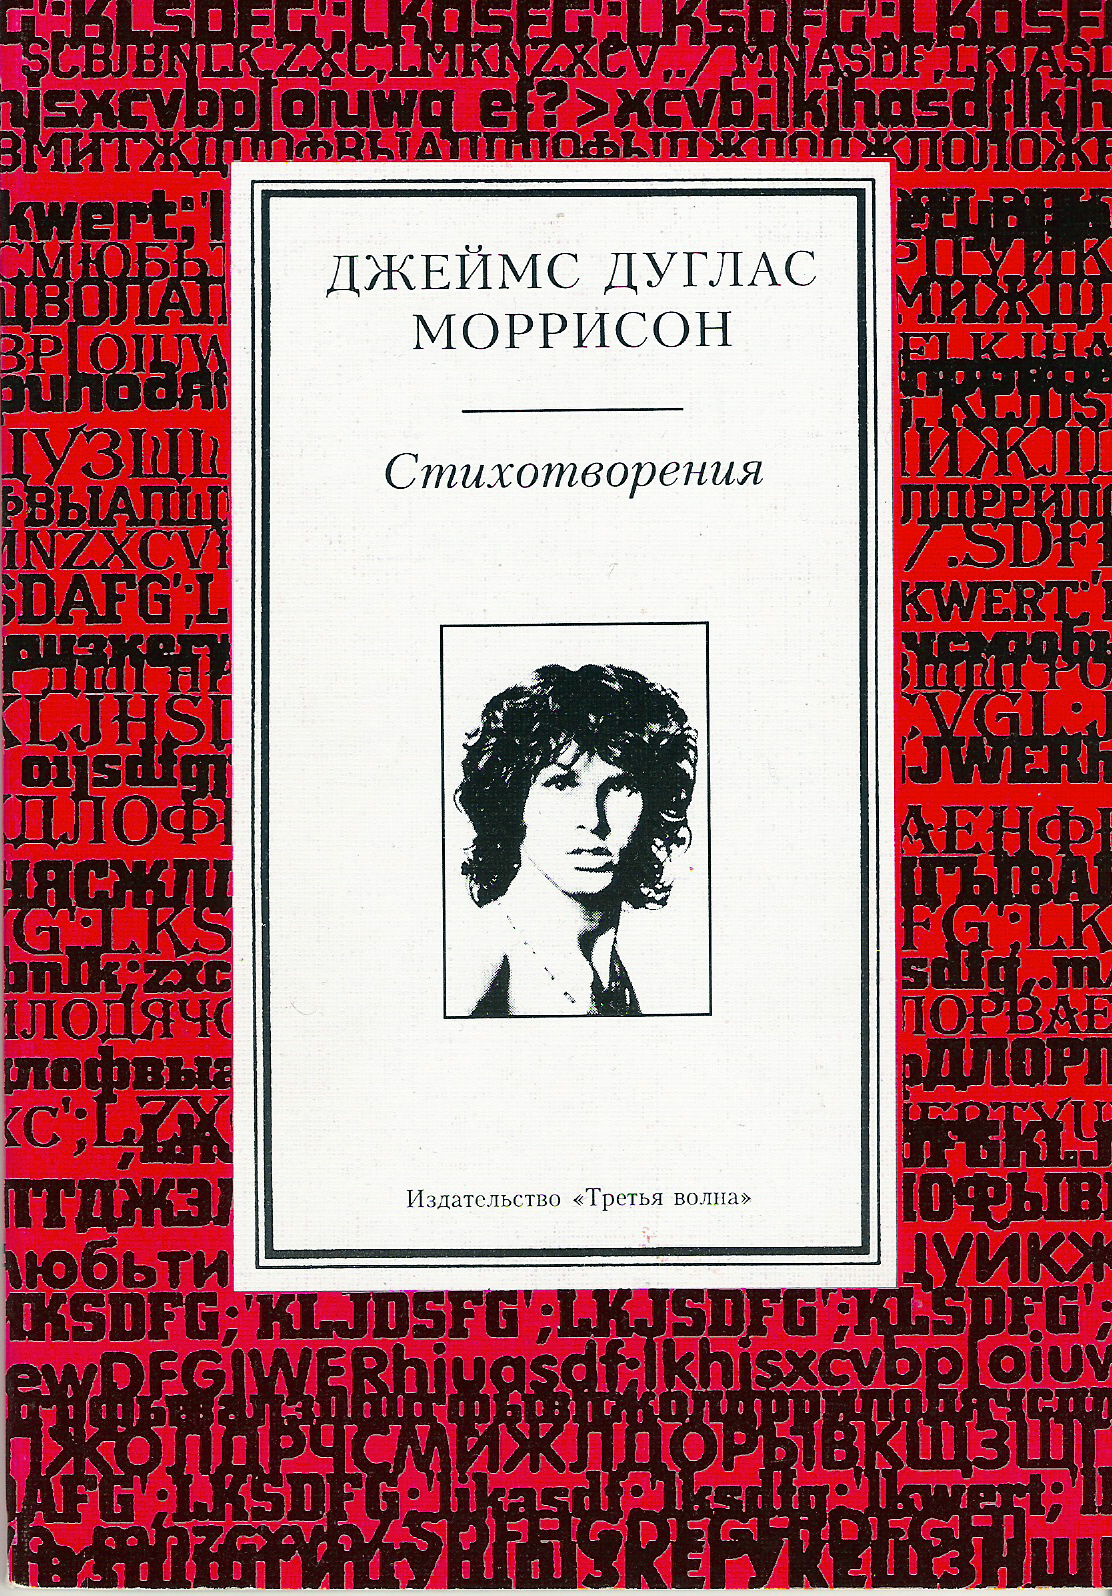 Morrison Book Cover